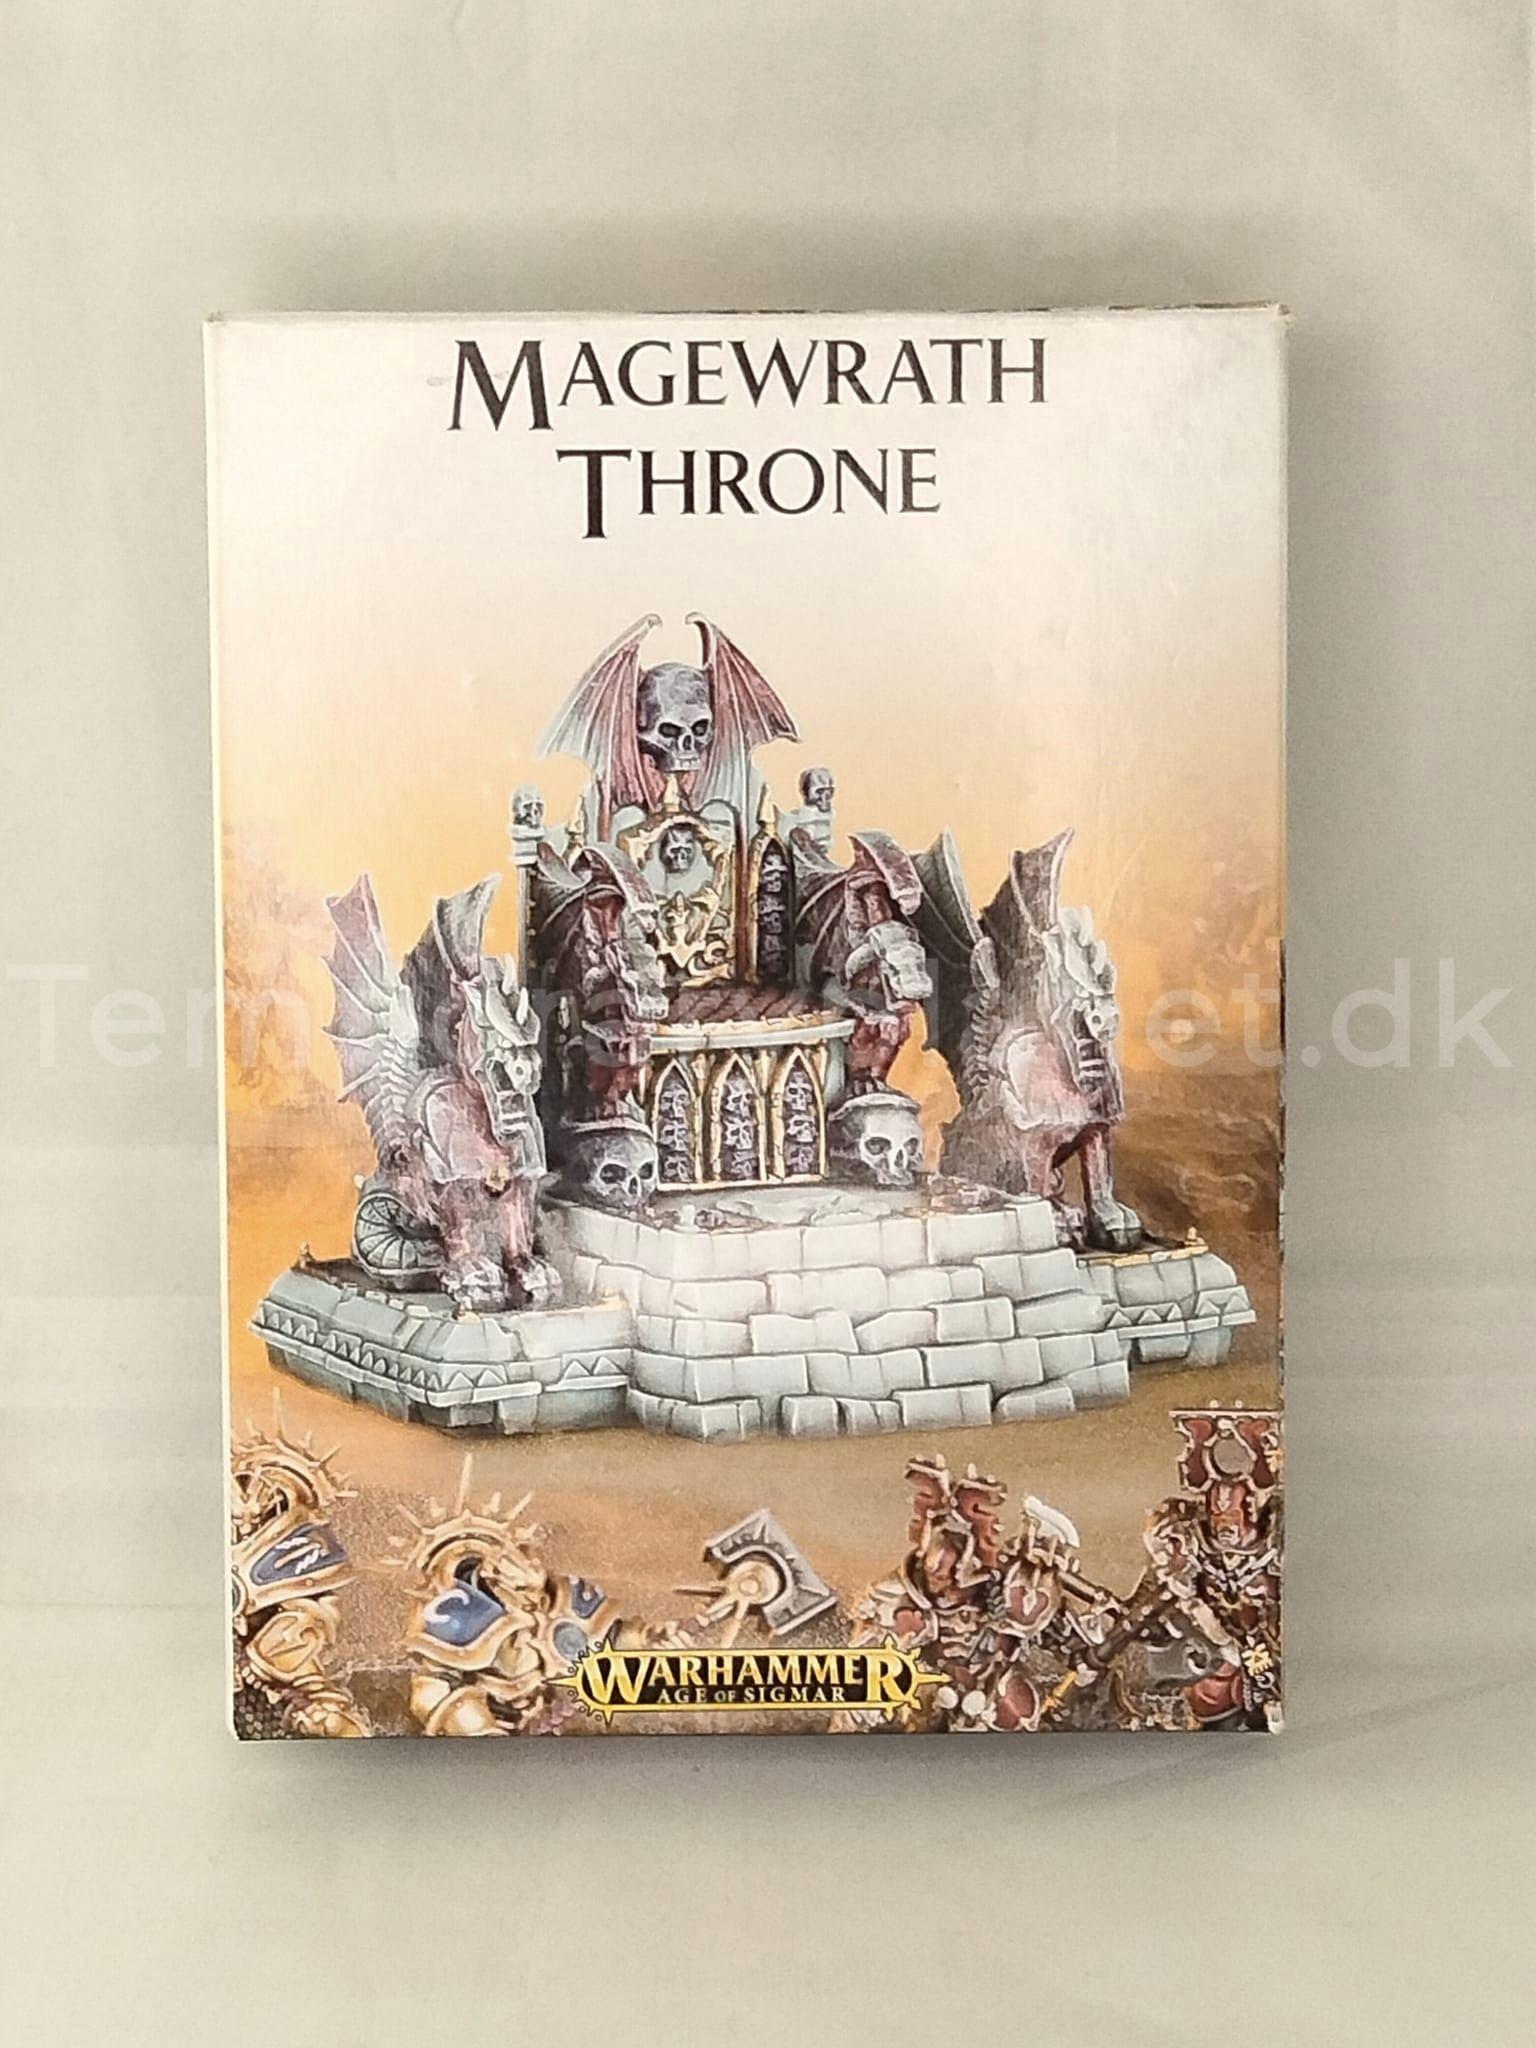 Magewrath Throne Death Undead 2016 Warhammer Fantasy Age of Sigmar AoS Games Workshop 1